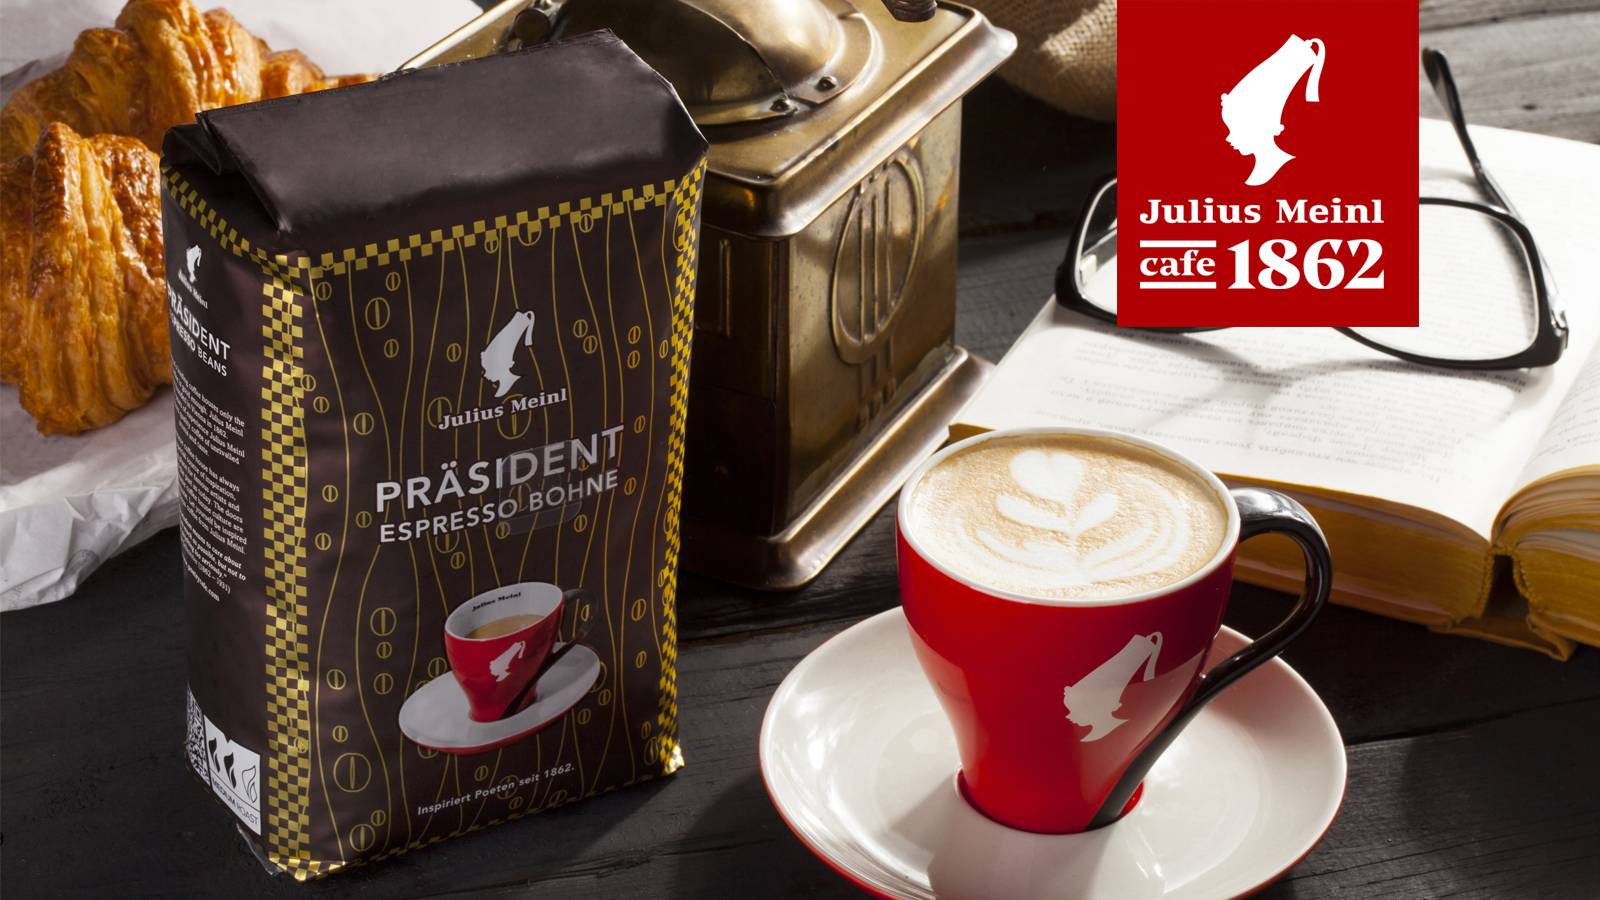 Все об австрийском кофе julius meinl - истрия бренда, лучшие марки и адреса кофеен